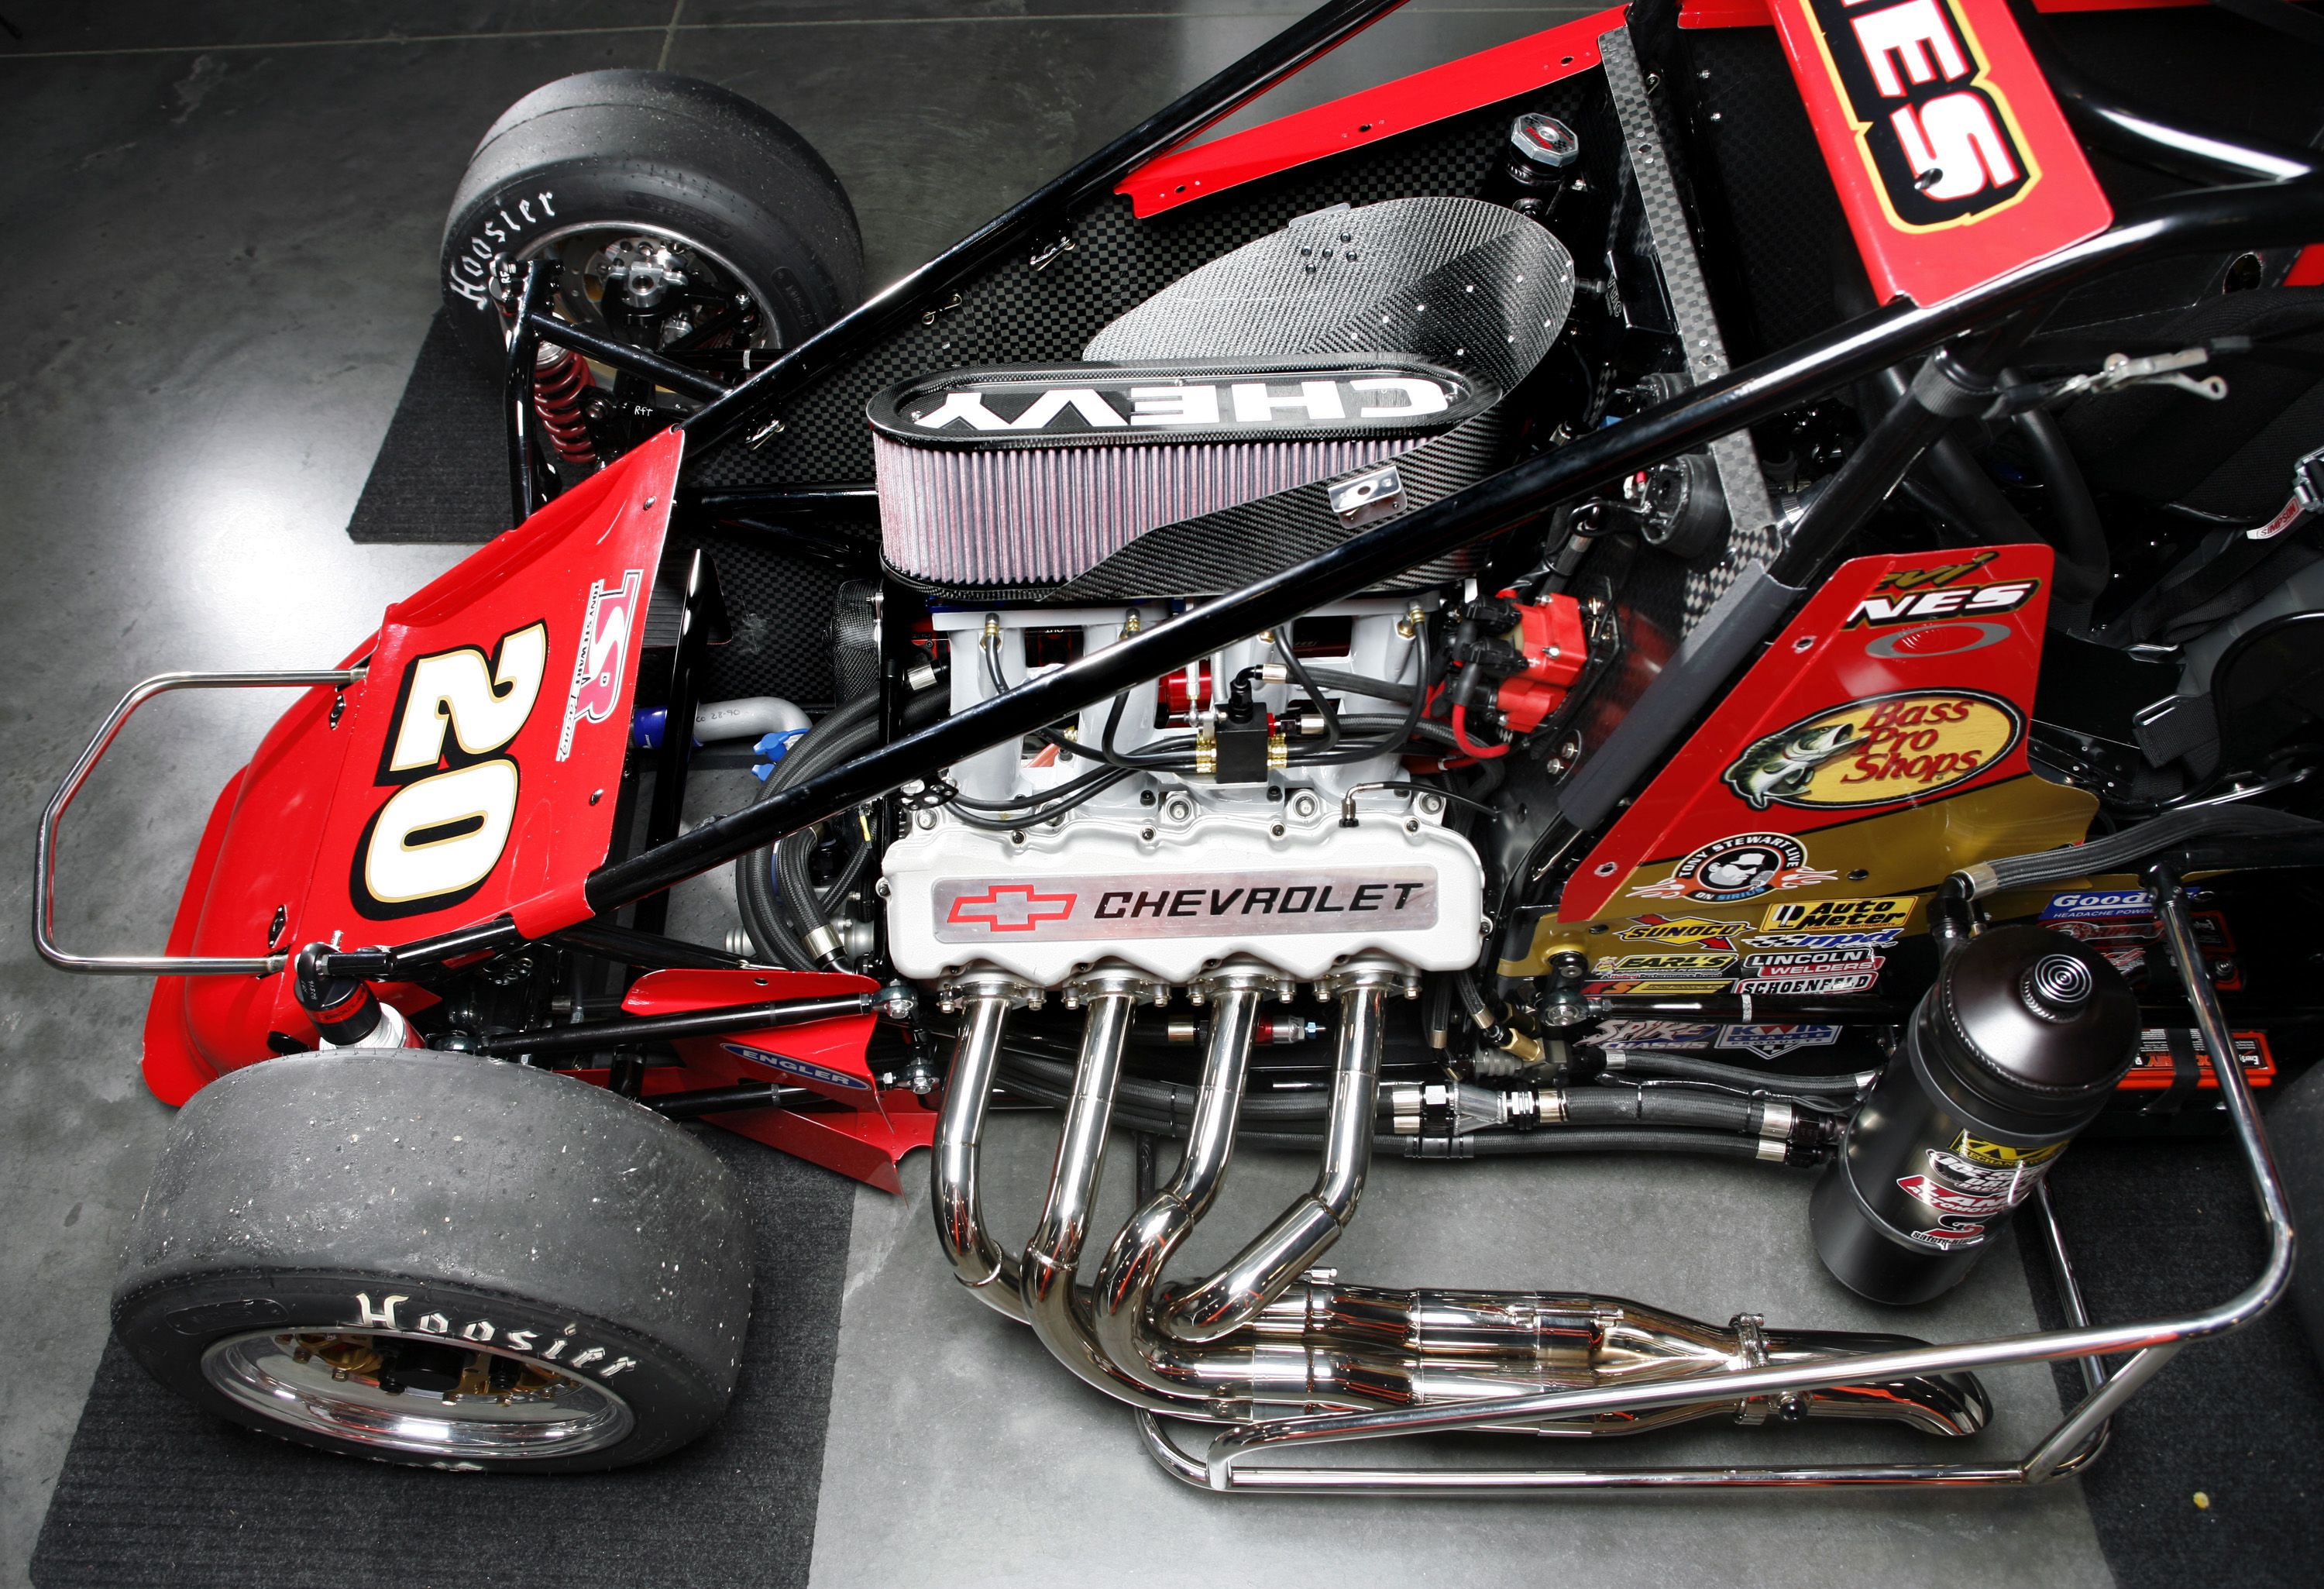 Tony Stewart Racing Midget Series Puter Wallpaper Desktop